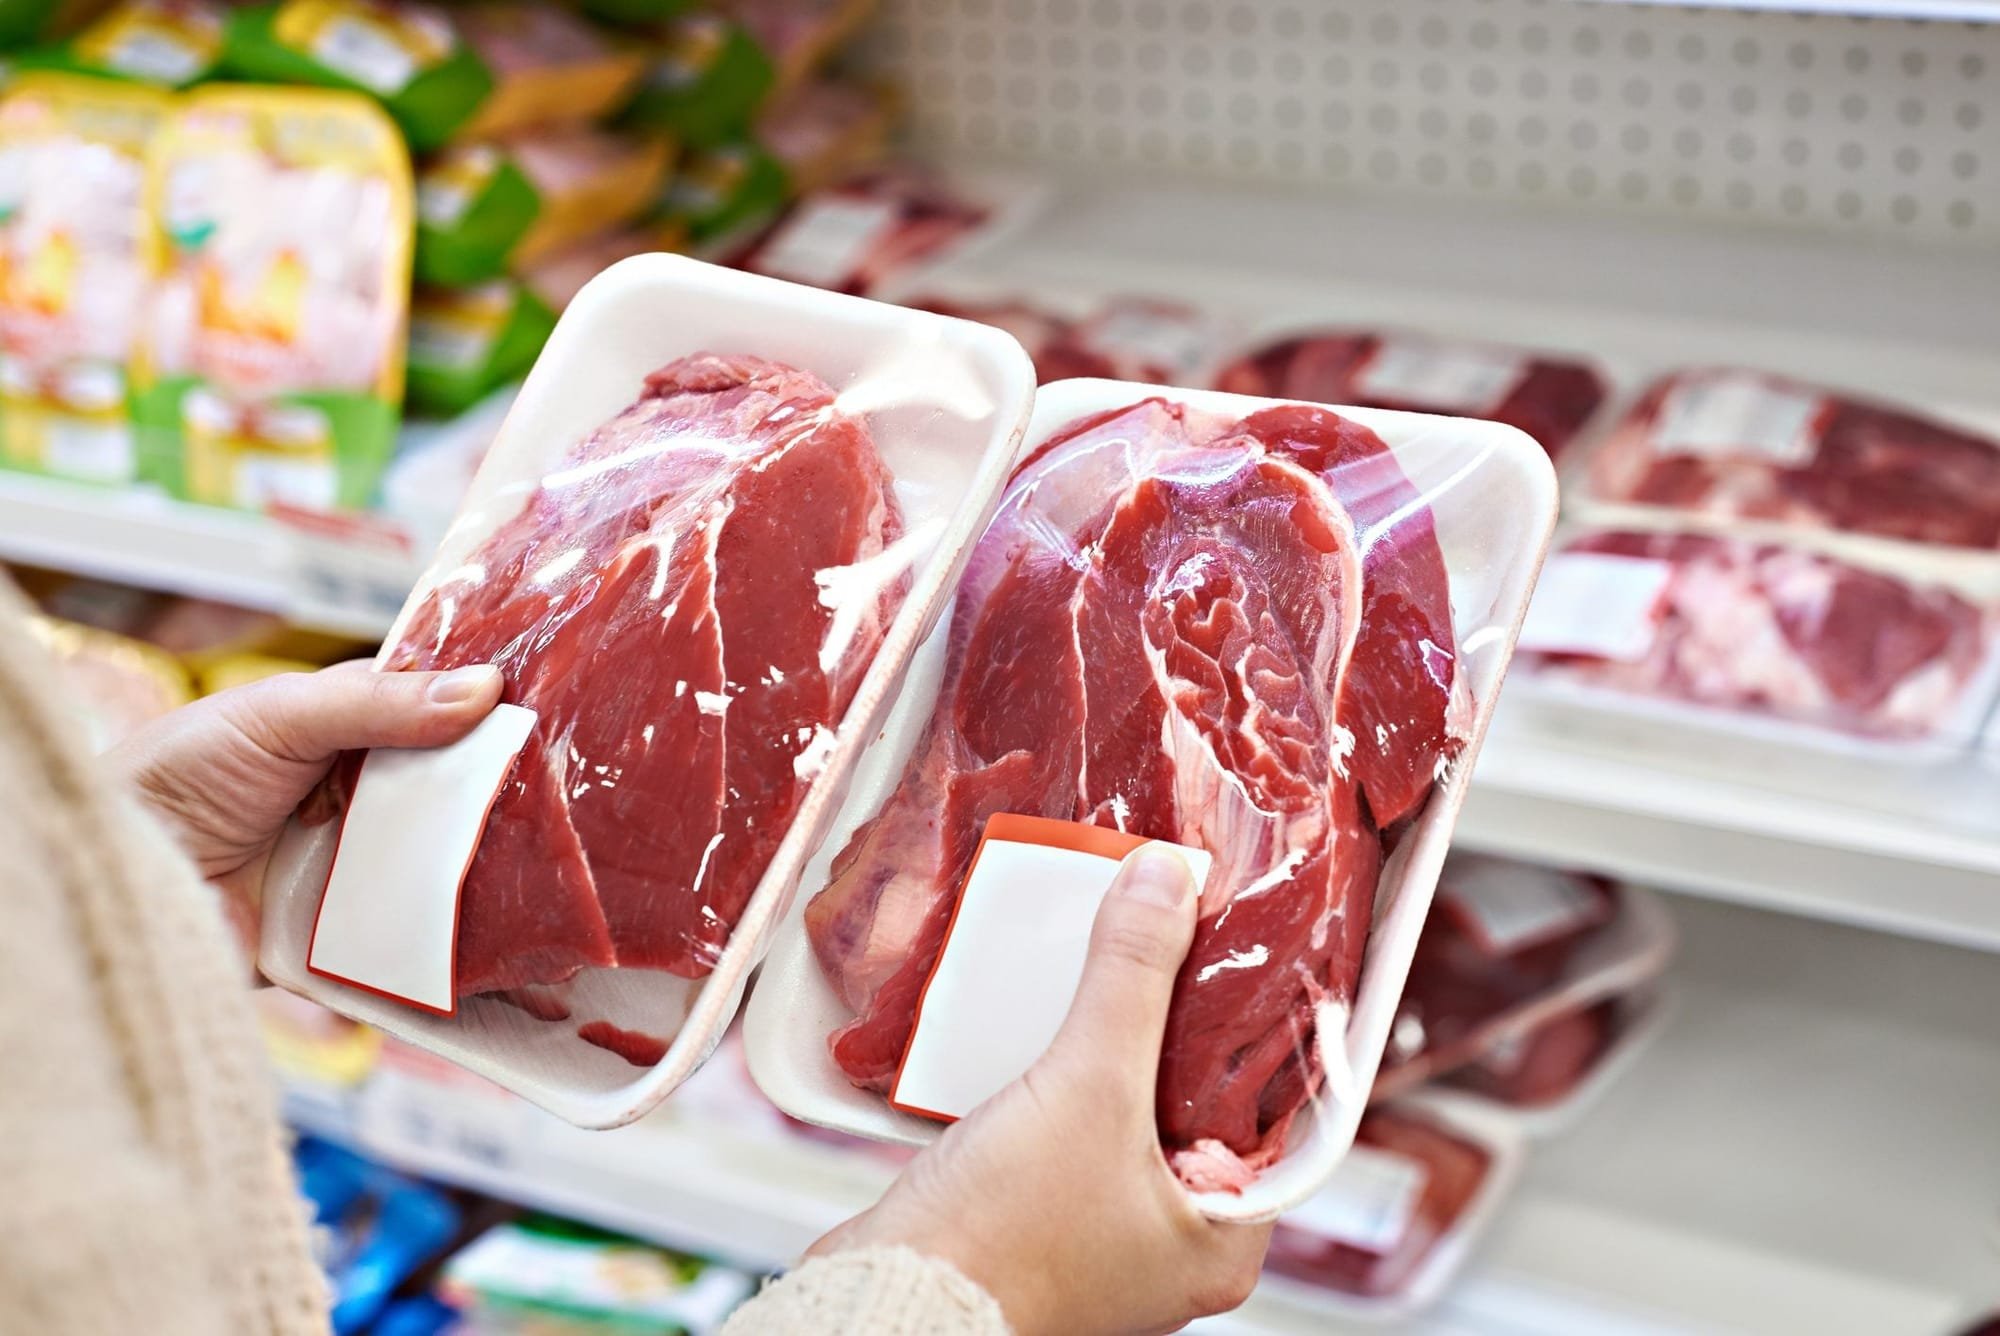 دراسة: تناول اللحوم الطازجة بكميات معقولة مفيد للصحة